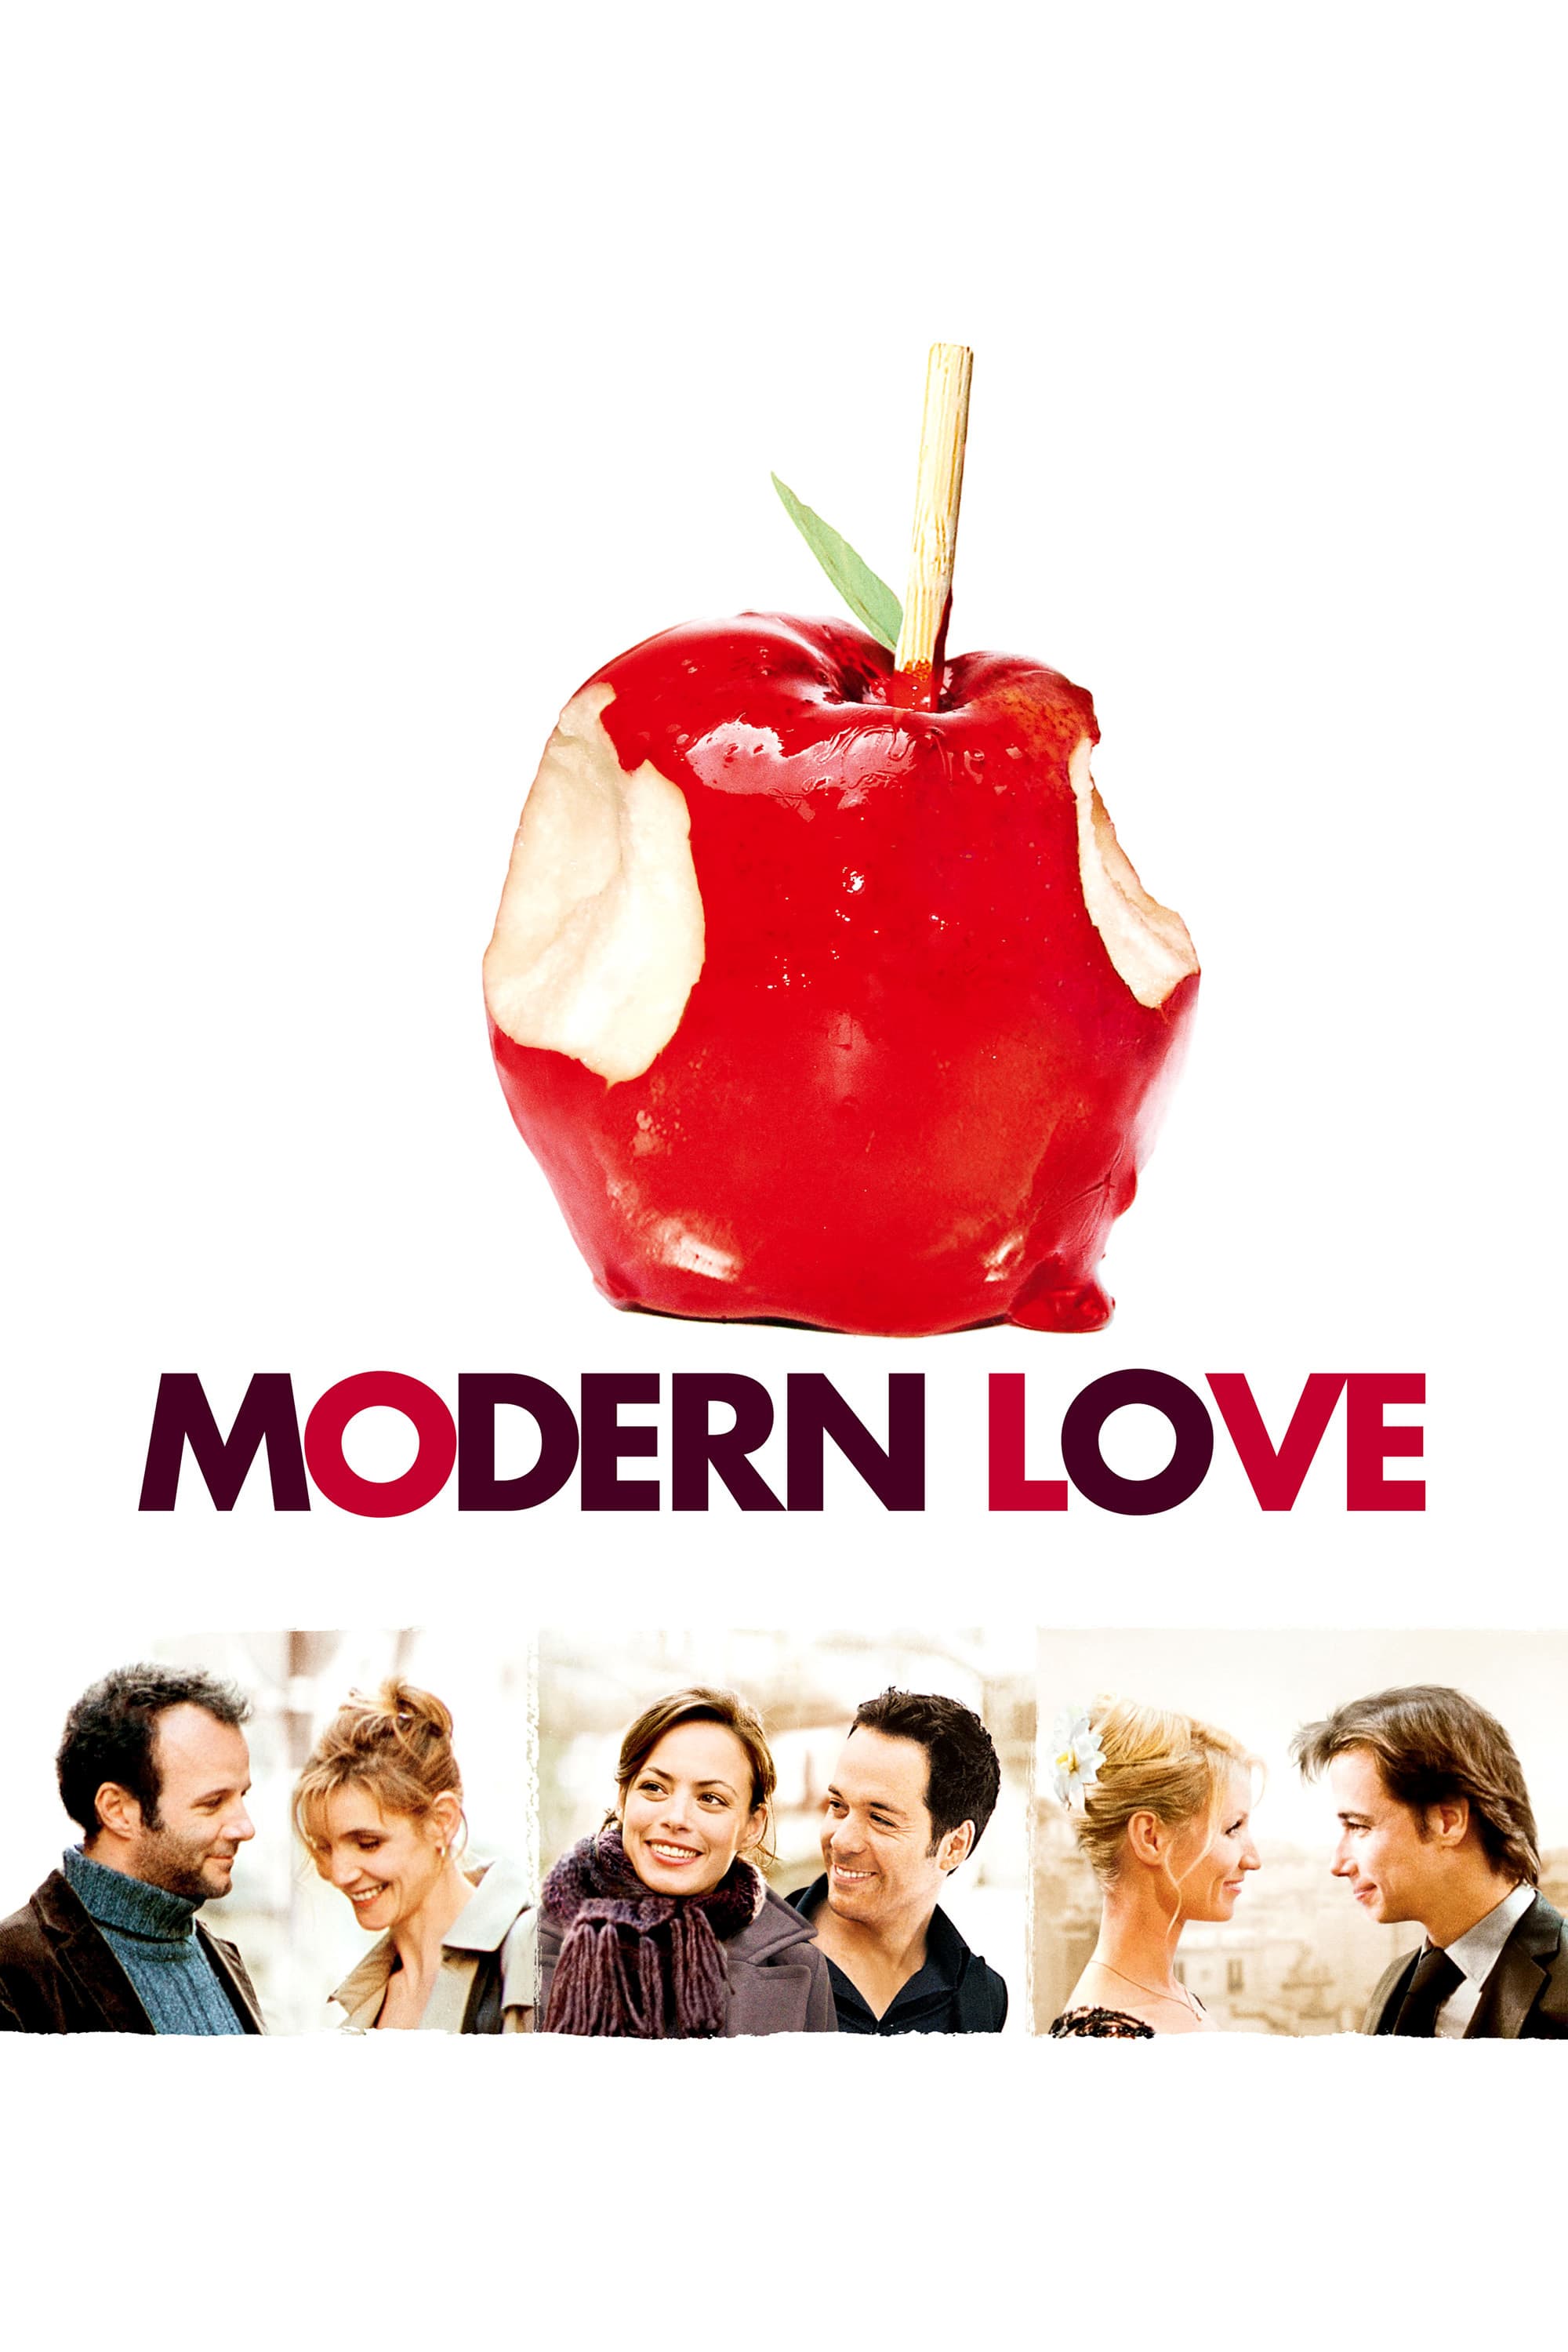 Affiche du film "Modern love"